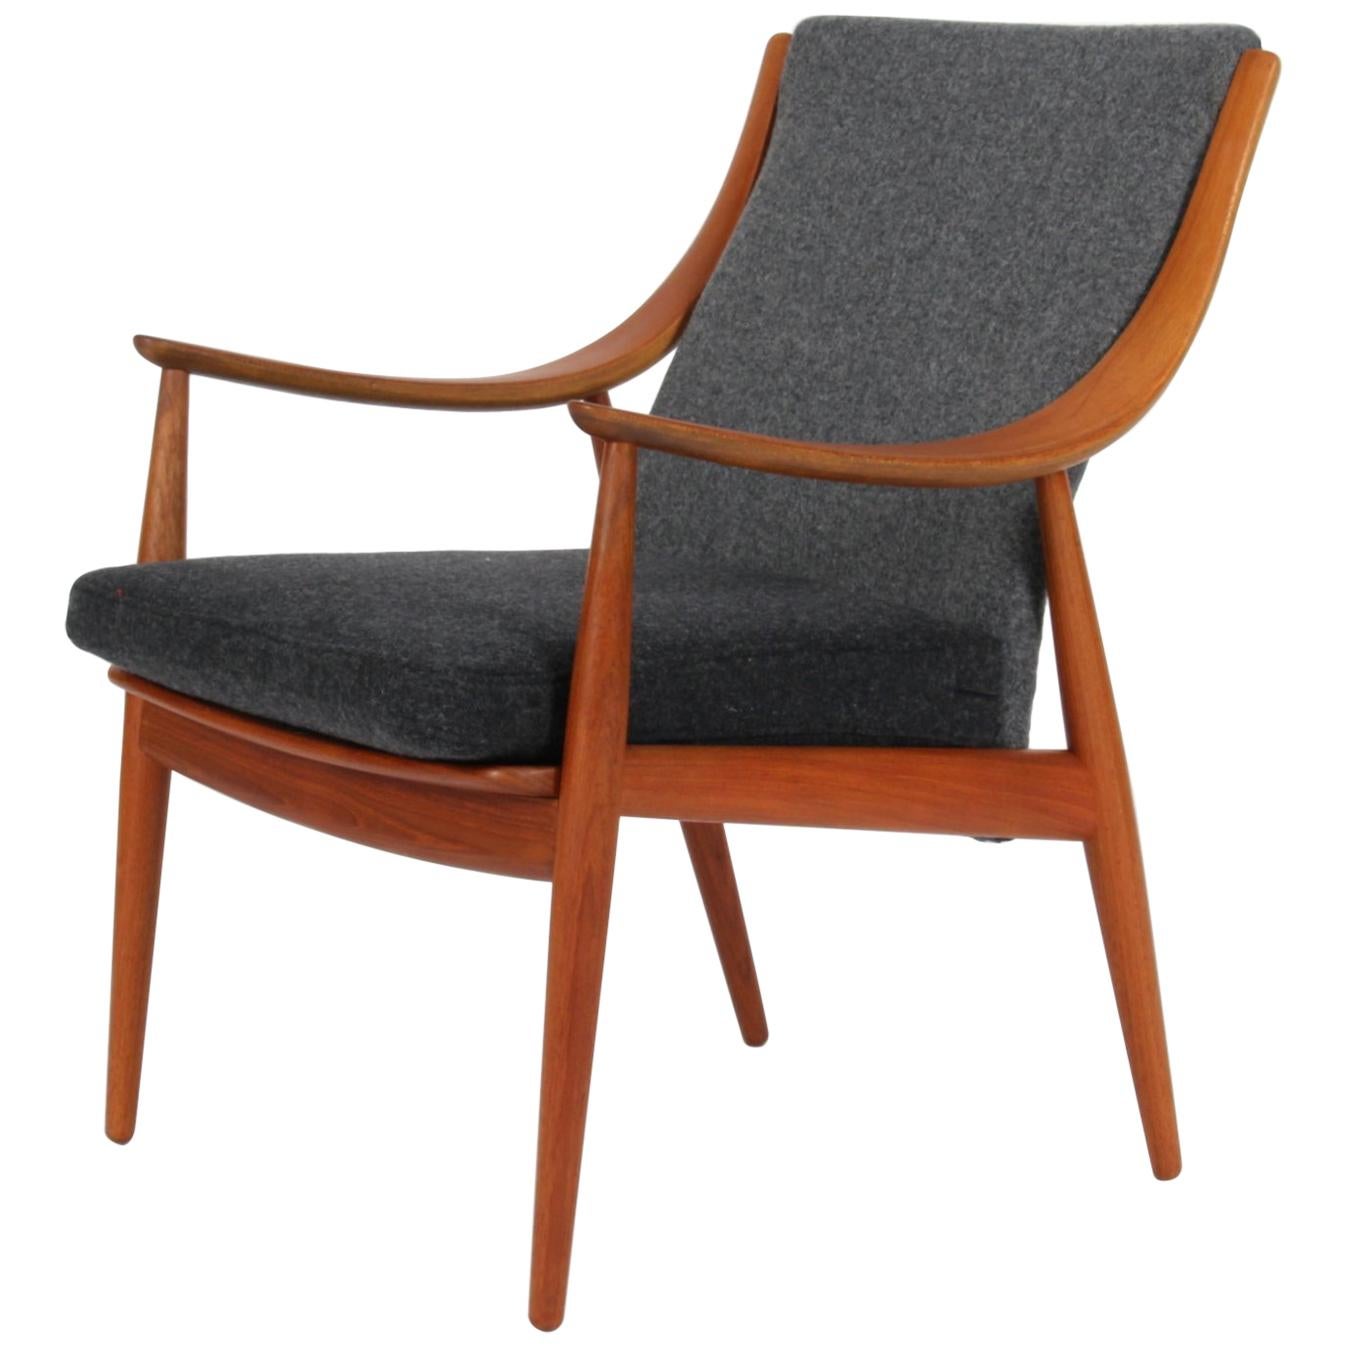 Peter Hvidt & Orla Mølgaard Nielsen, Lounge Chair in Teak and Wool